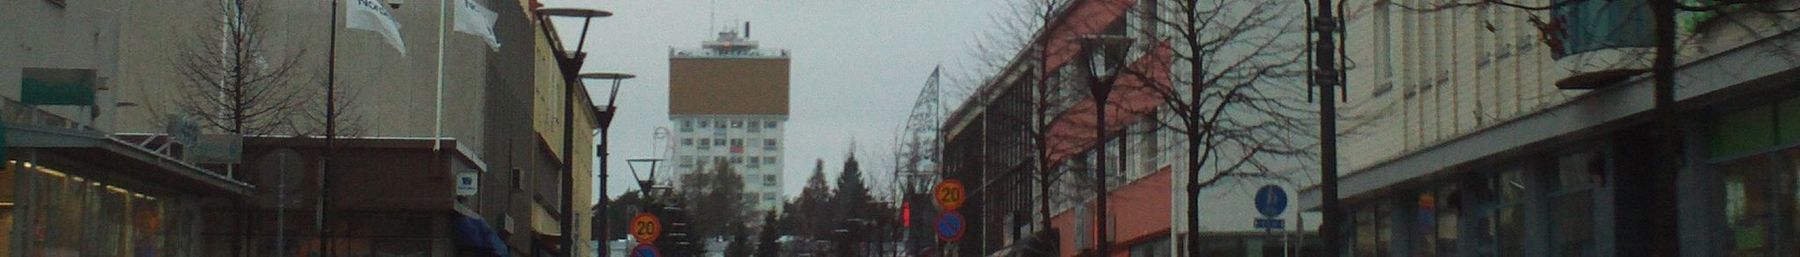 WV banner Varkaus Kauppakatu street view.jpg